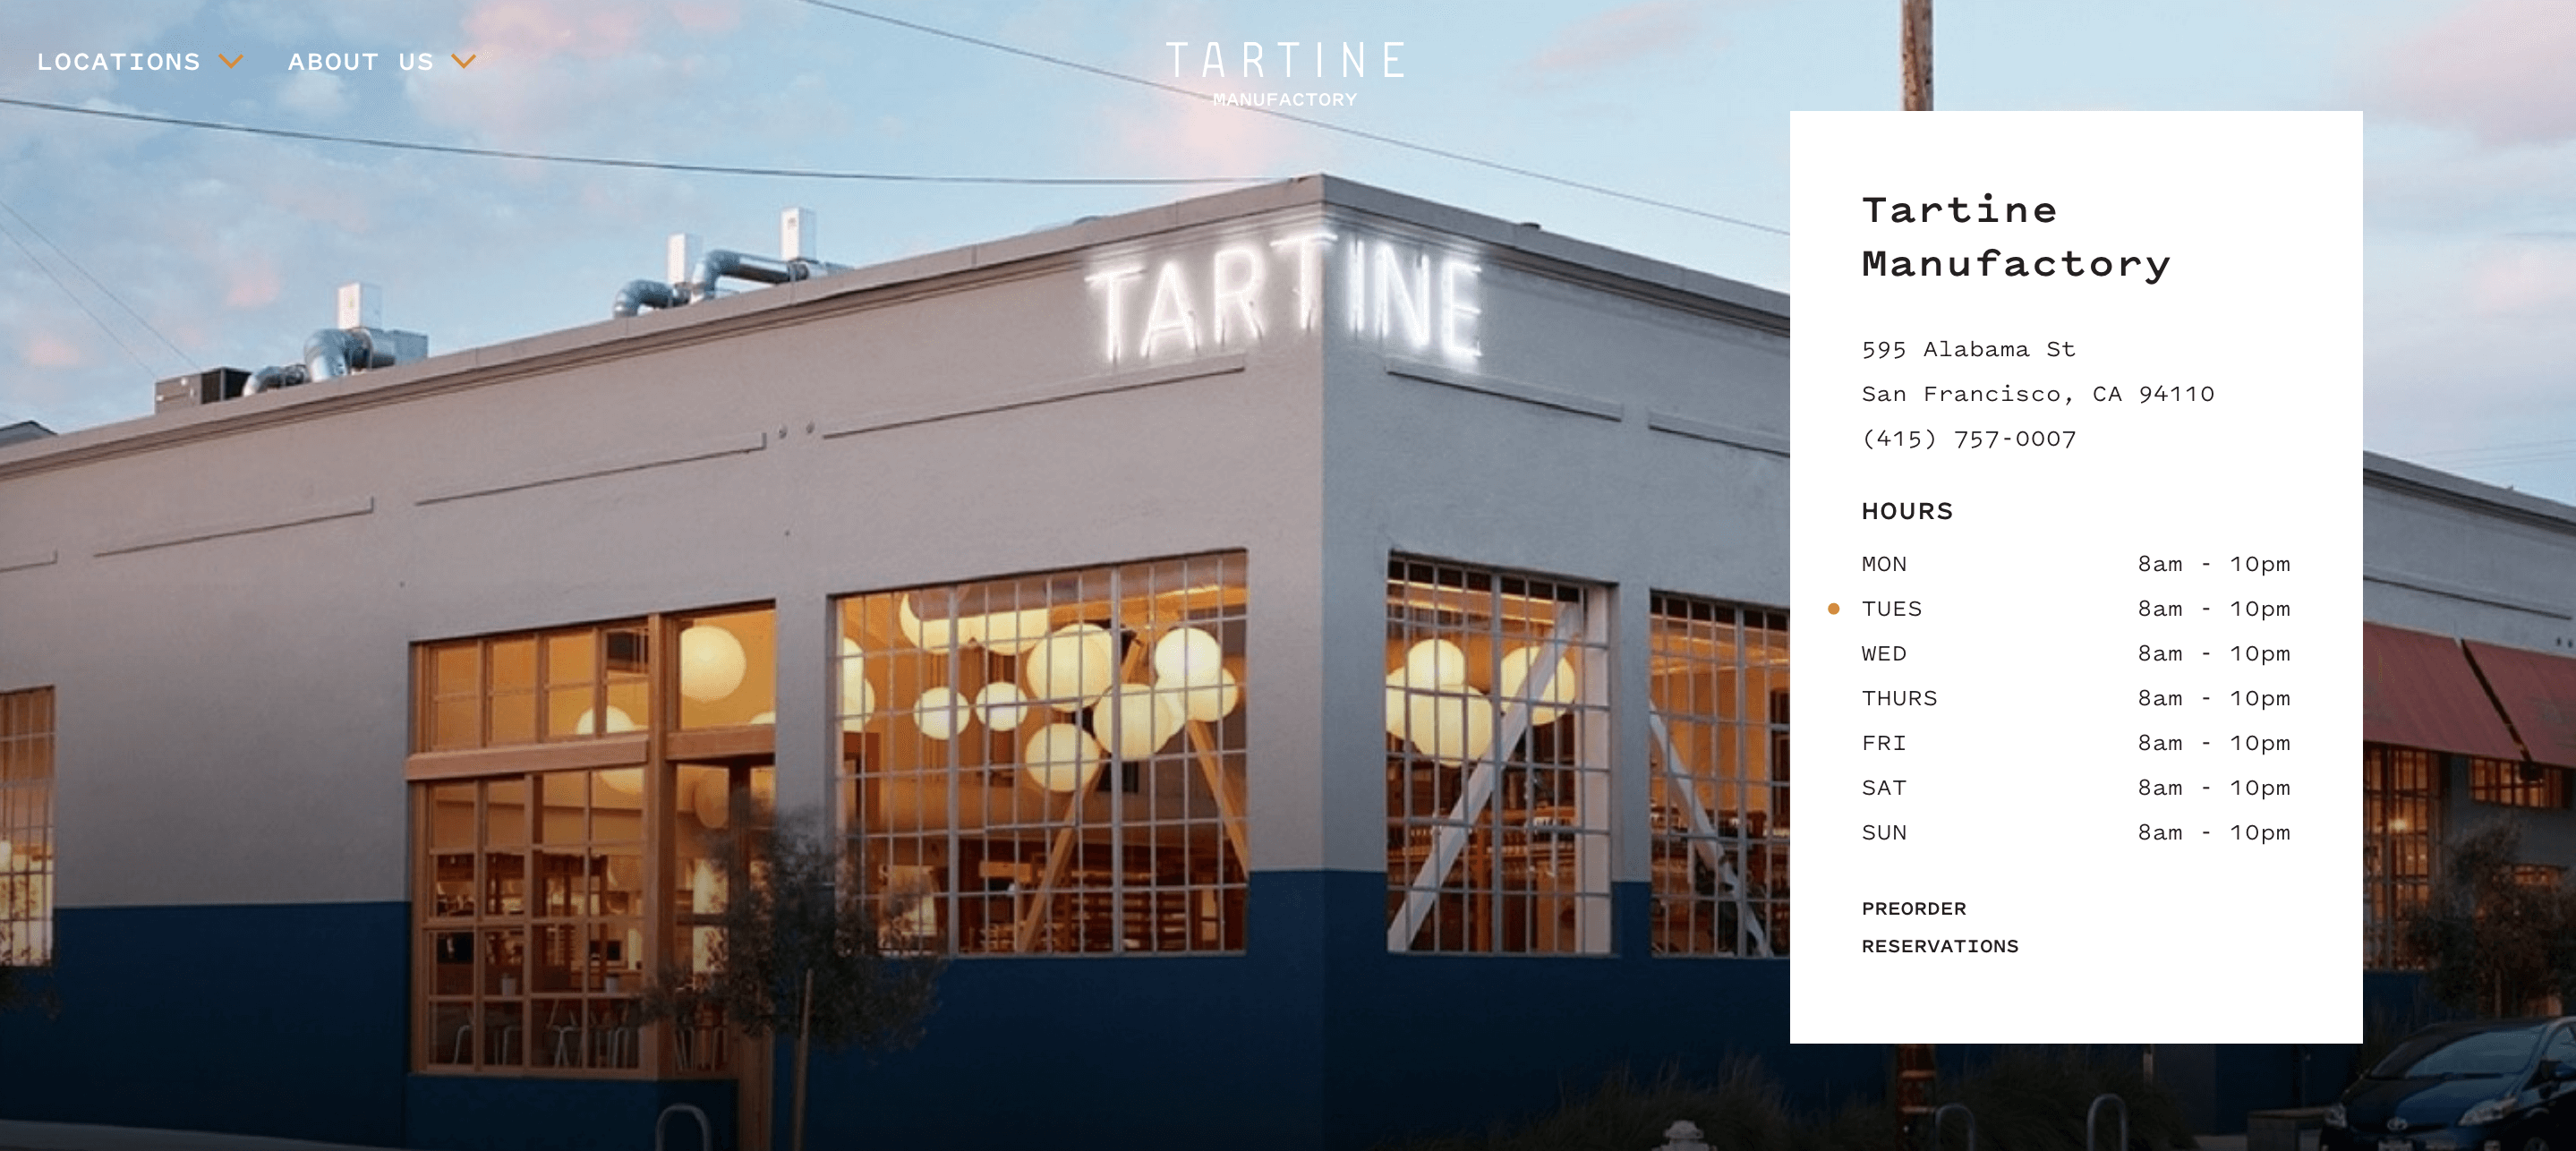 Tartine Restaurant & Bakery Website Design